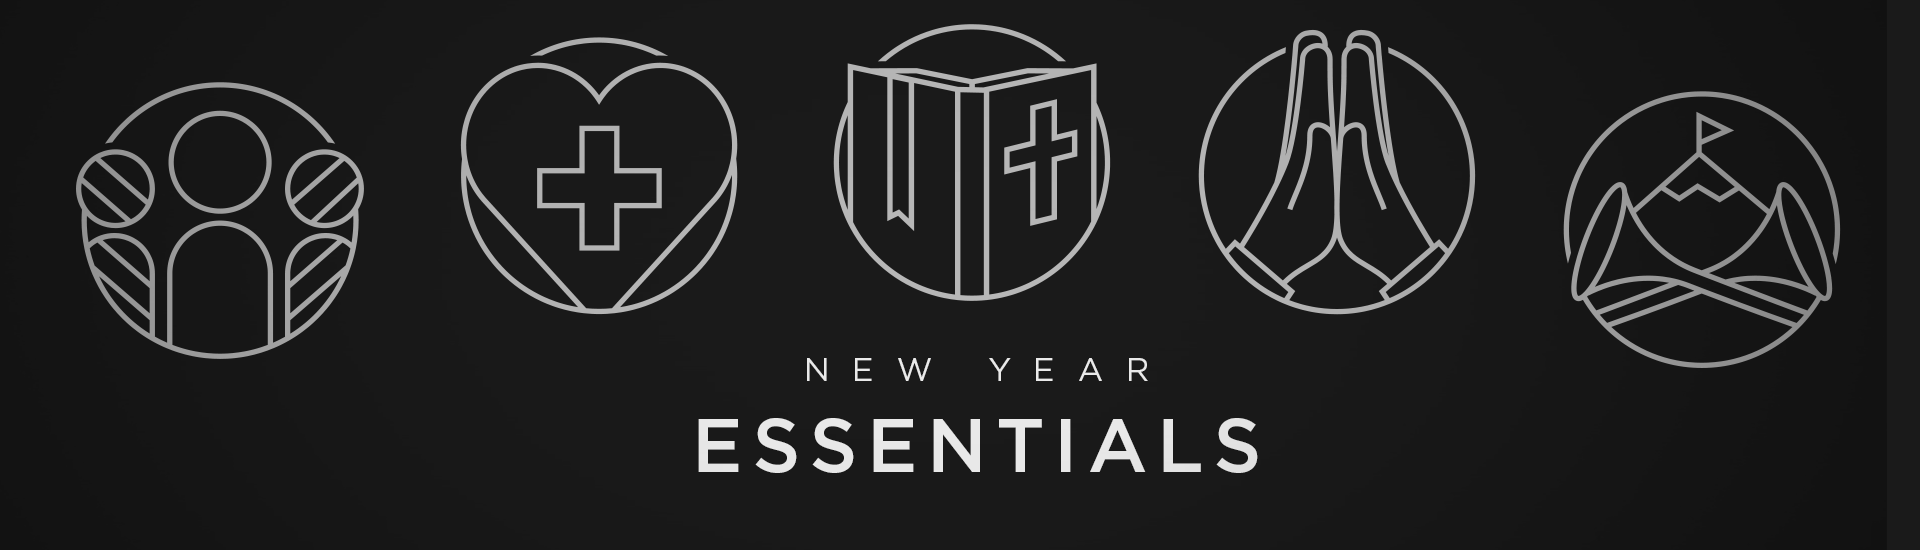 New Year Essentials 2020